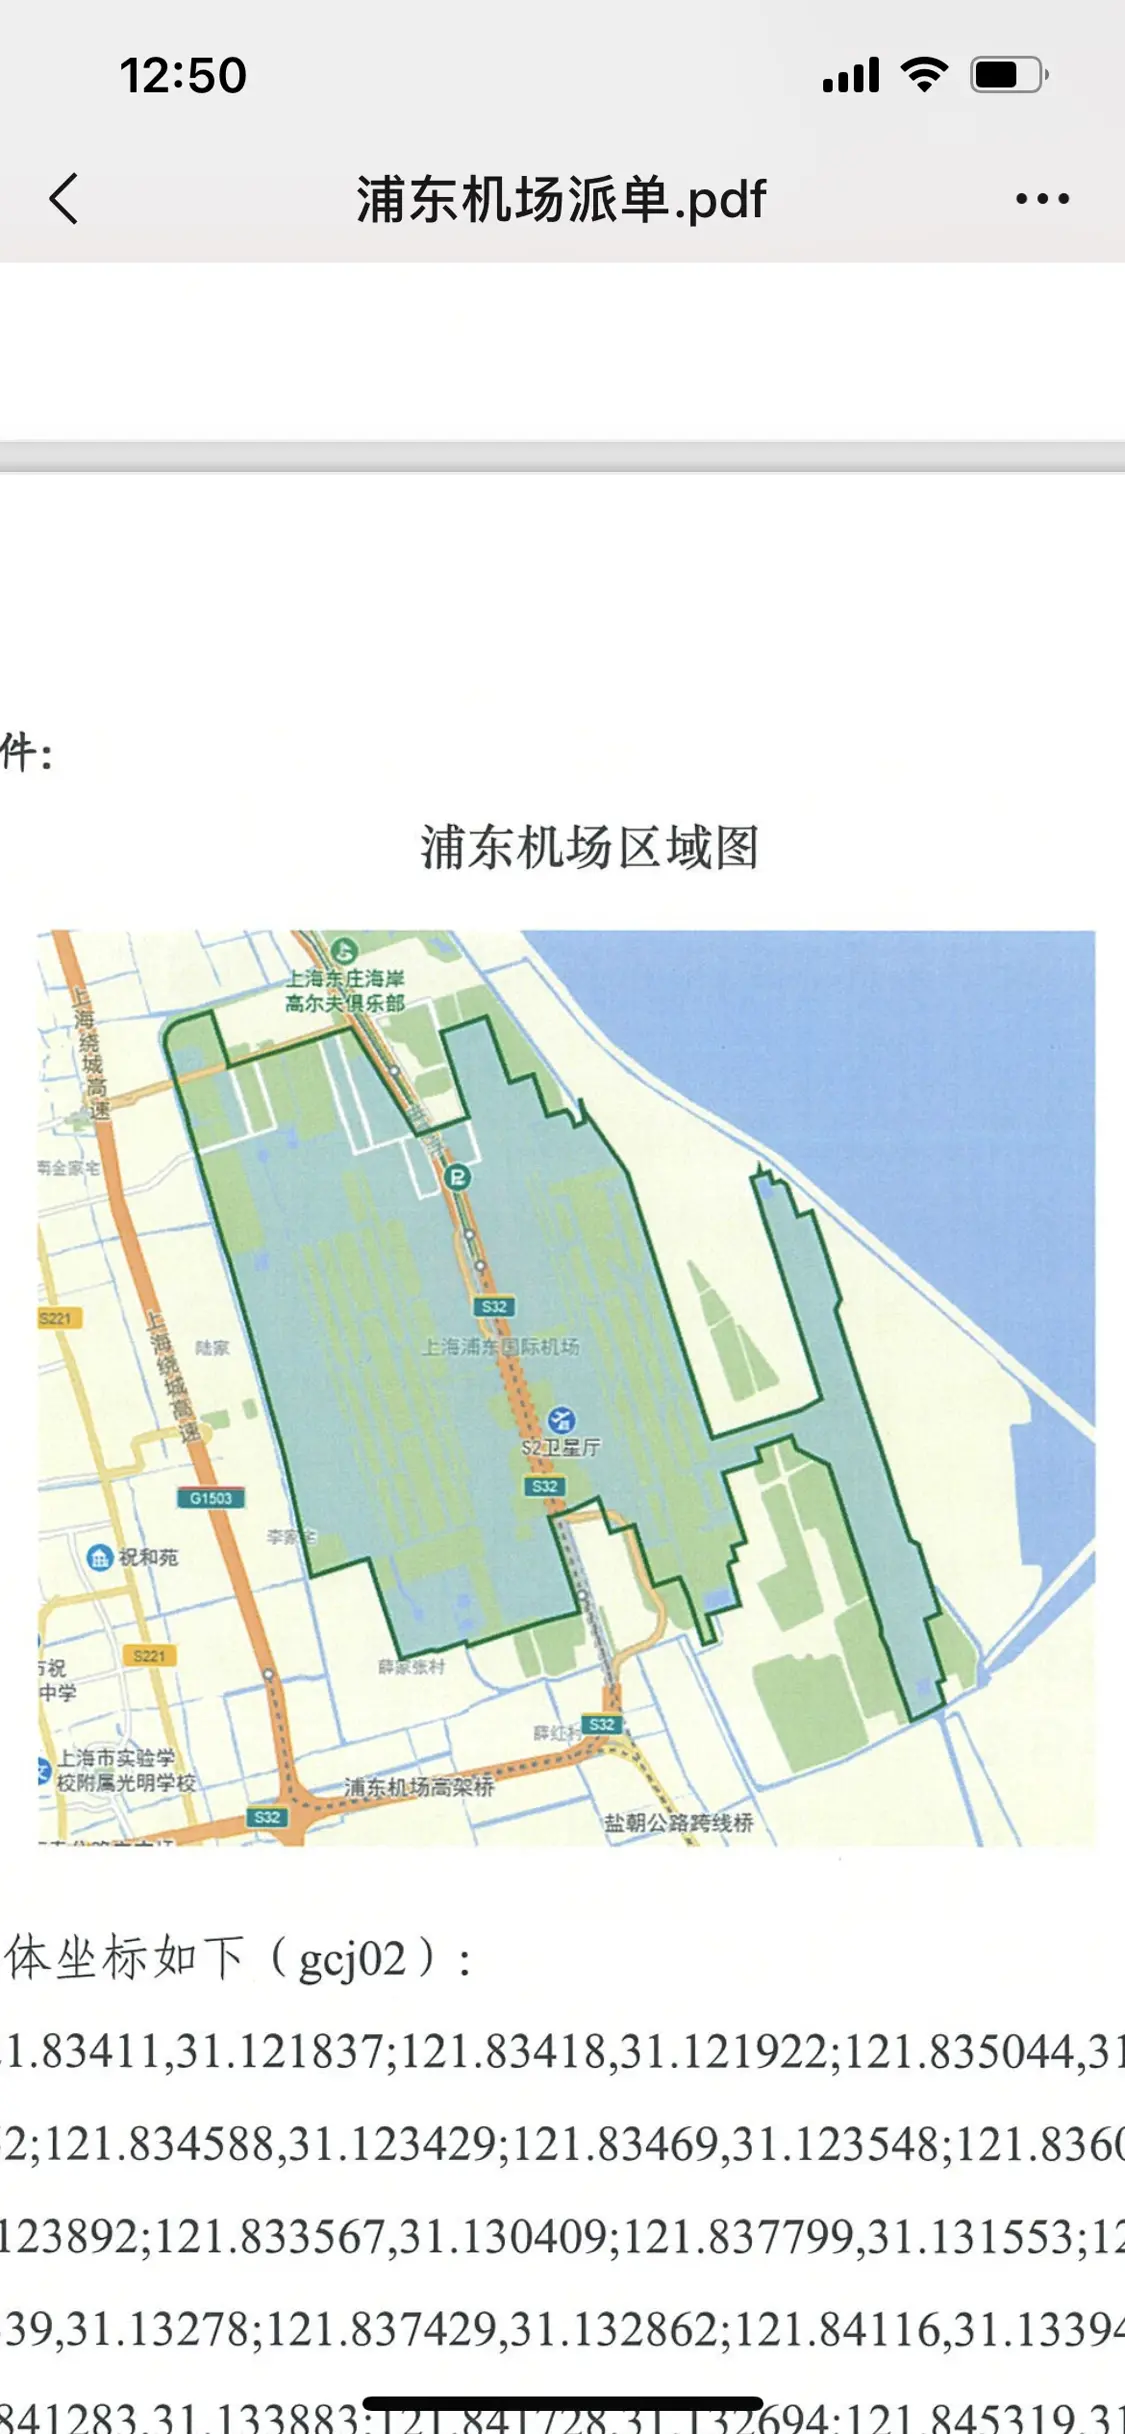 上海禁止网约⻋乎合、网约⻋聚合平合发布起点为浦东机场区域及涉及的边界道路。本文图均为受访者供图